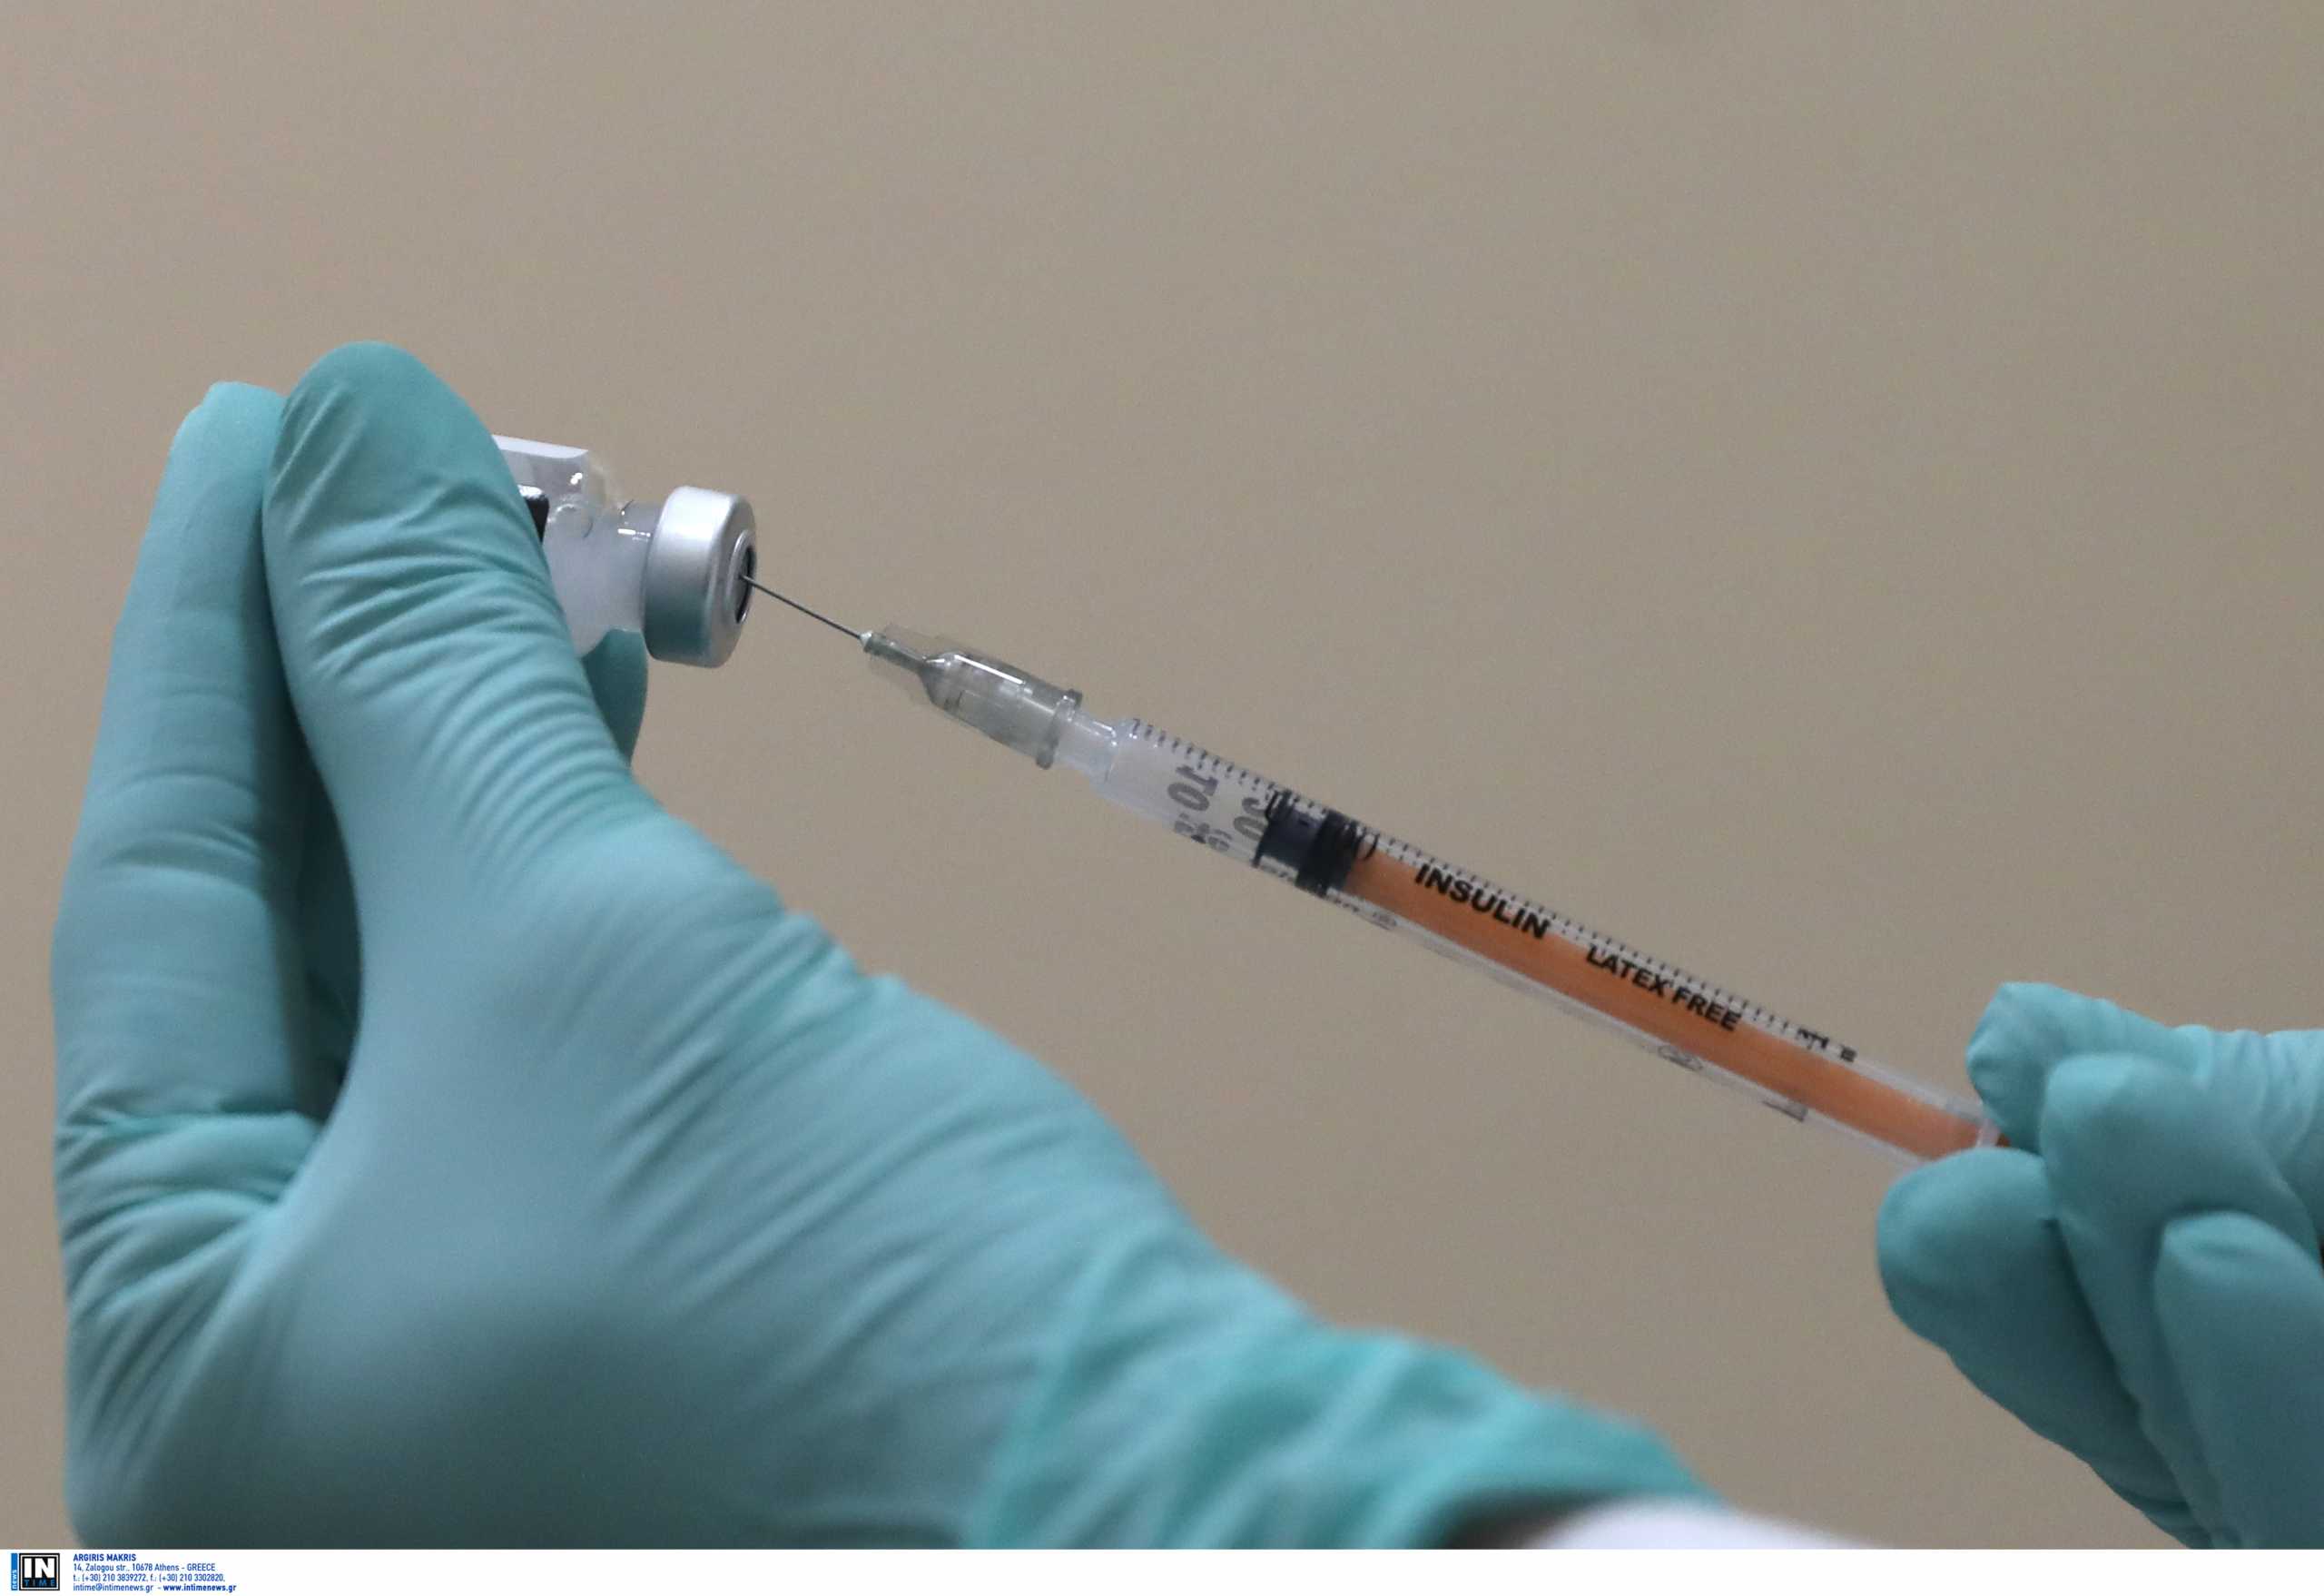 Απίστευτη καταγγελία: Γιατρός σε νοσοκομείο στα νότια προάστια πετούσε δόσεις στα σκουπίδια αντί να εμβολιάζει